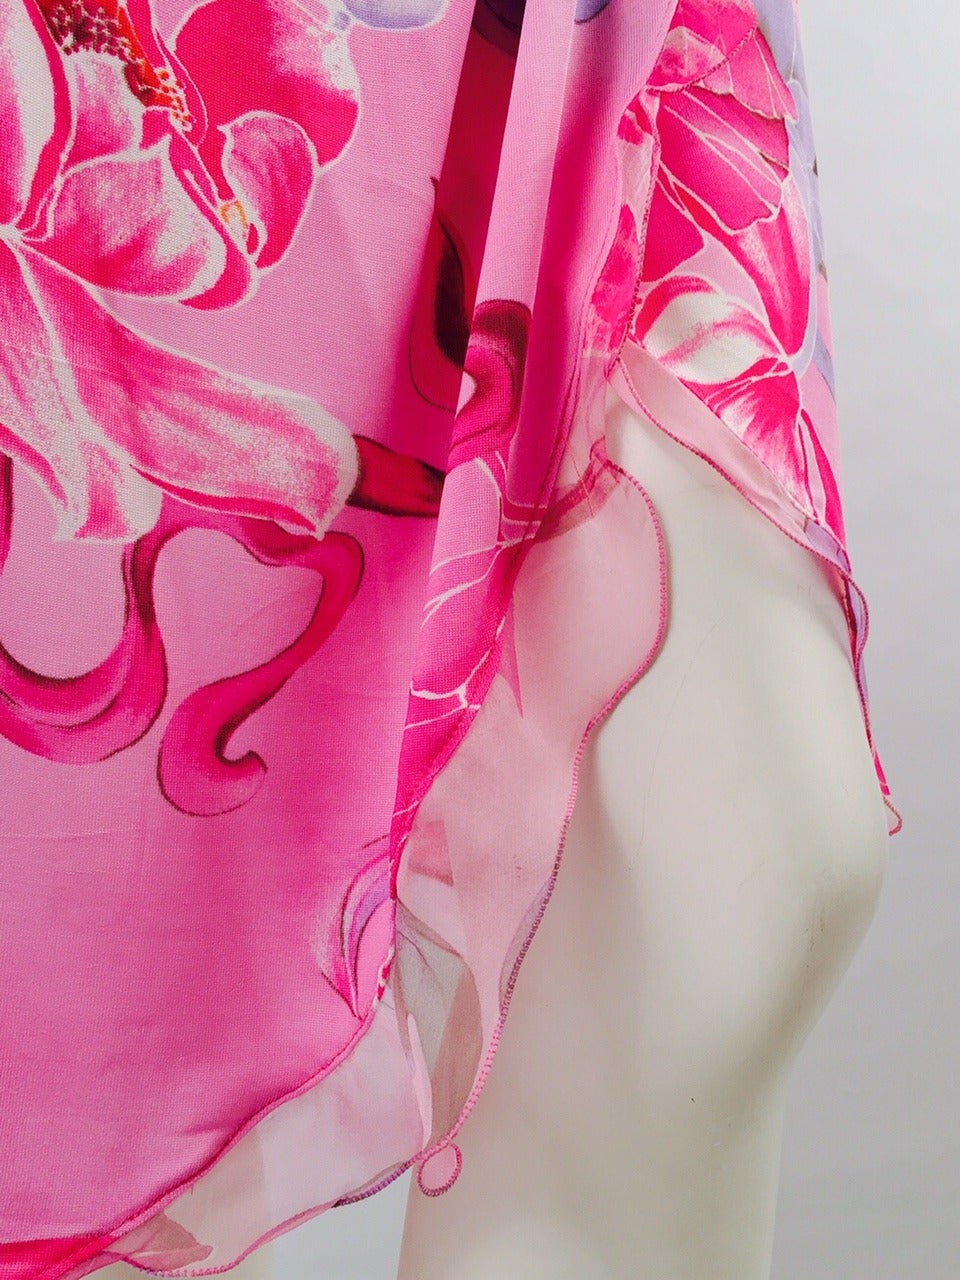 Emanuel Ungaro Pink Floral Bias Cut Wrap Dress For Sale 1